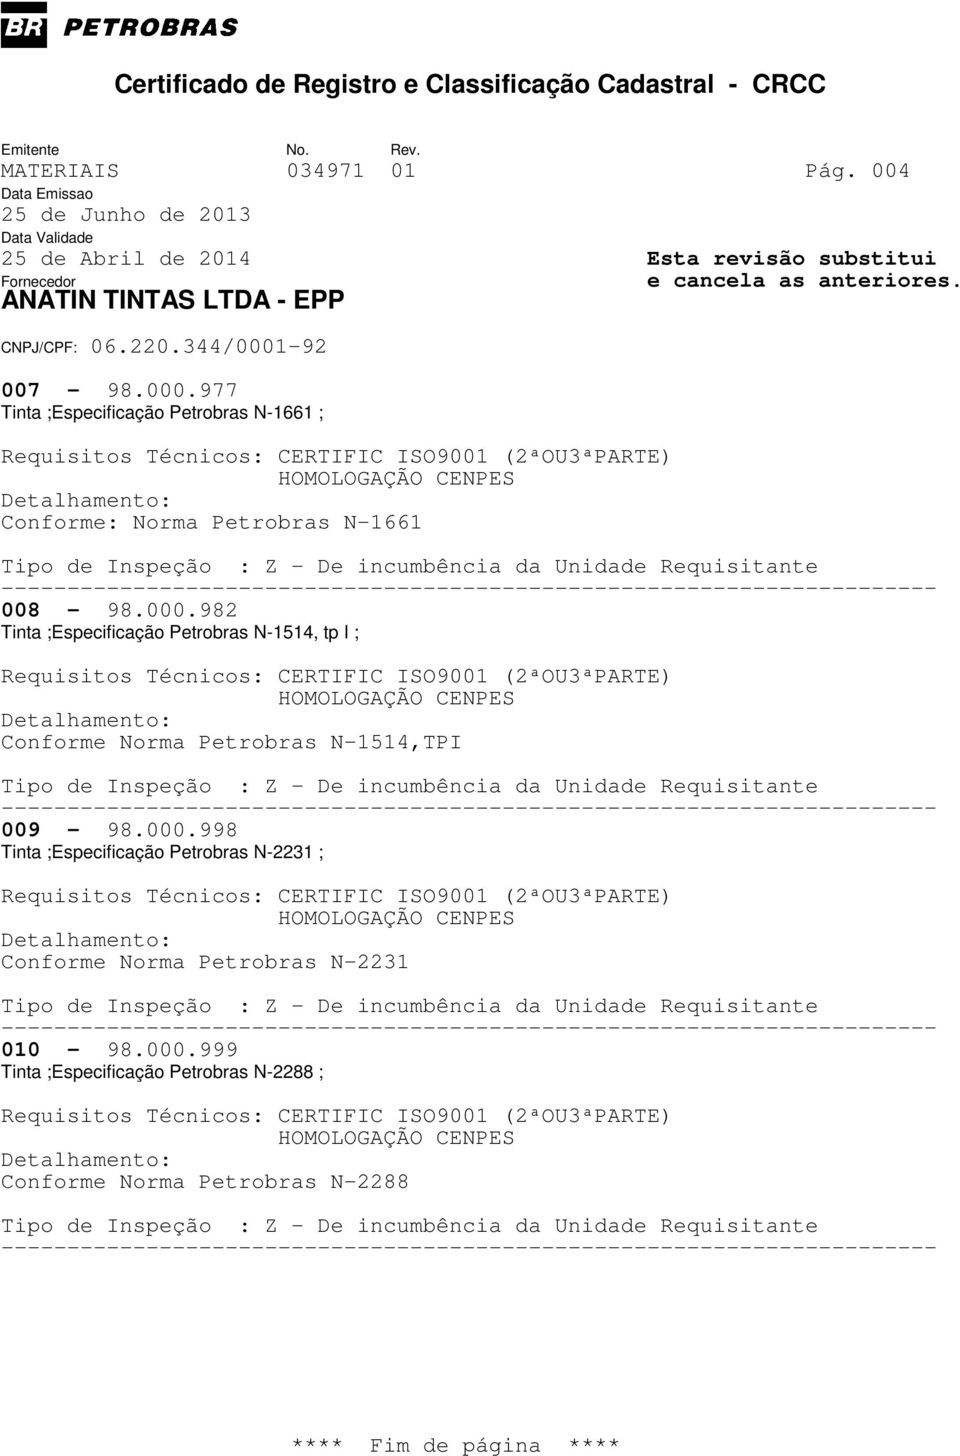 982 Tinta ;Especificação Petrobras N-1514, tp I ; Conforme Norma Petrobras N-1514,TPI